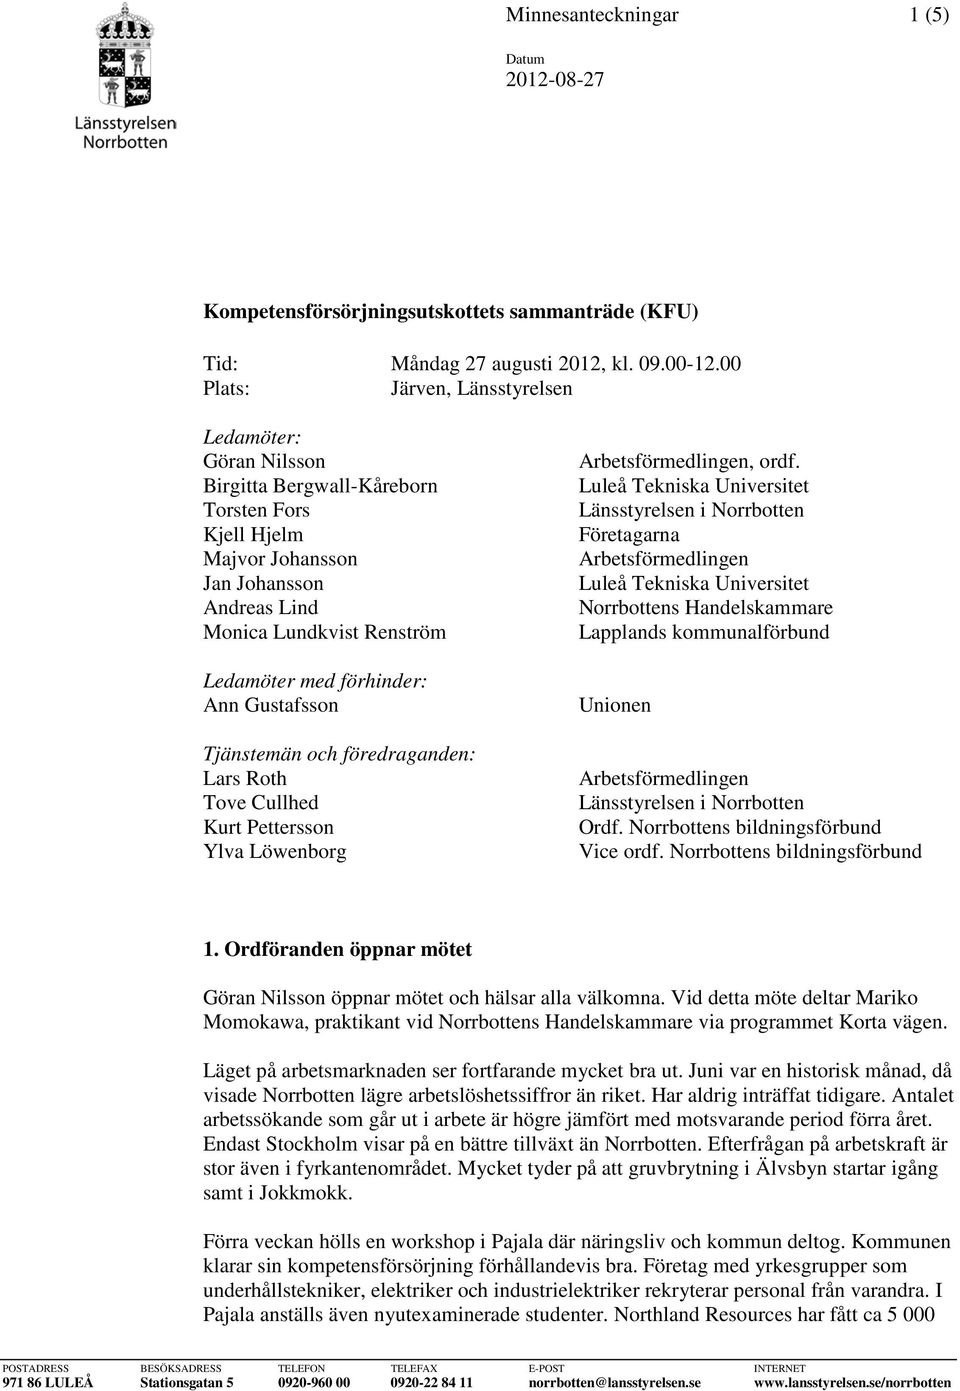 förhinder: Ann Gustafsson Tjänstemän och föredraganden: Lars Roth Tove Cullhed Kurt Pettersson Ylva Löwenborg Arbetsförmedlingen, ordf.